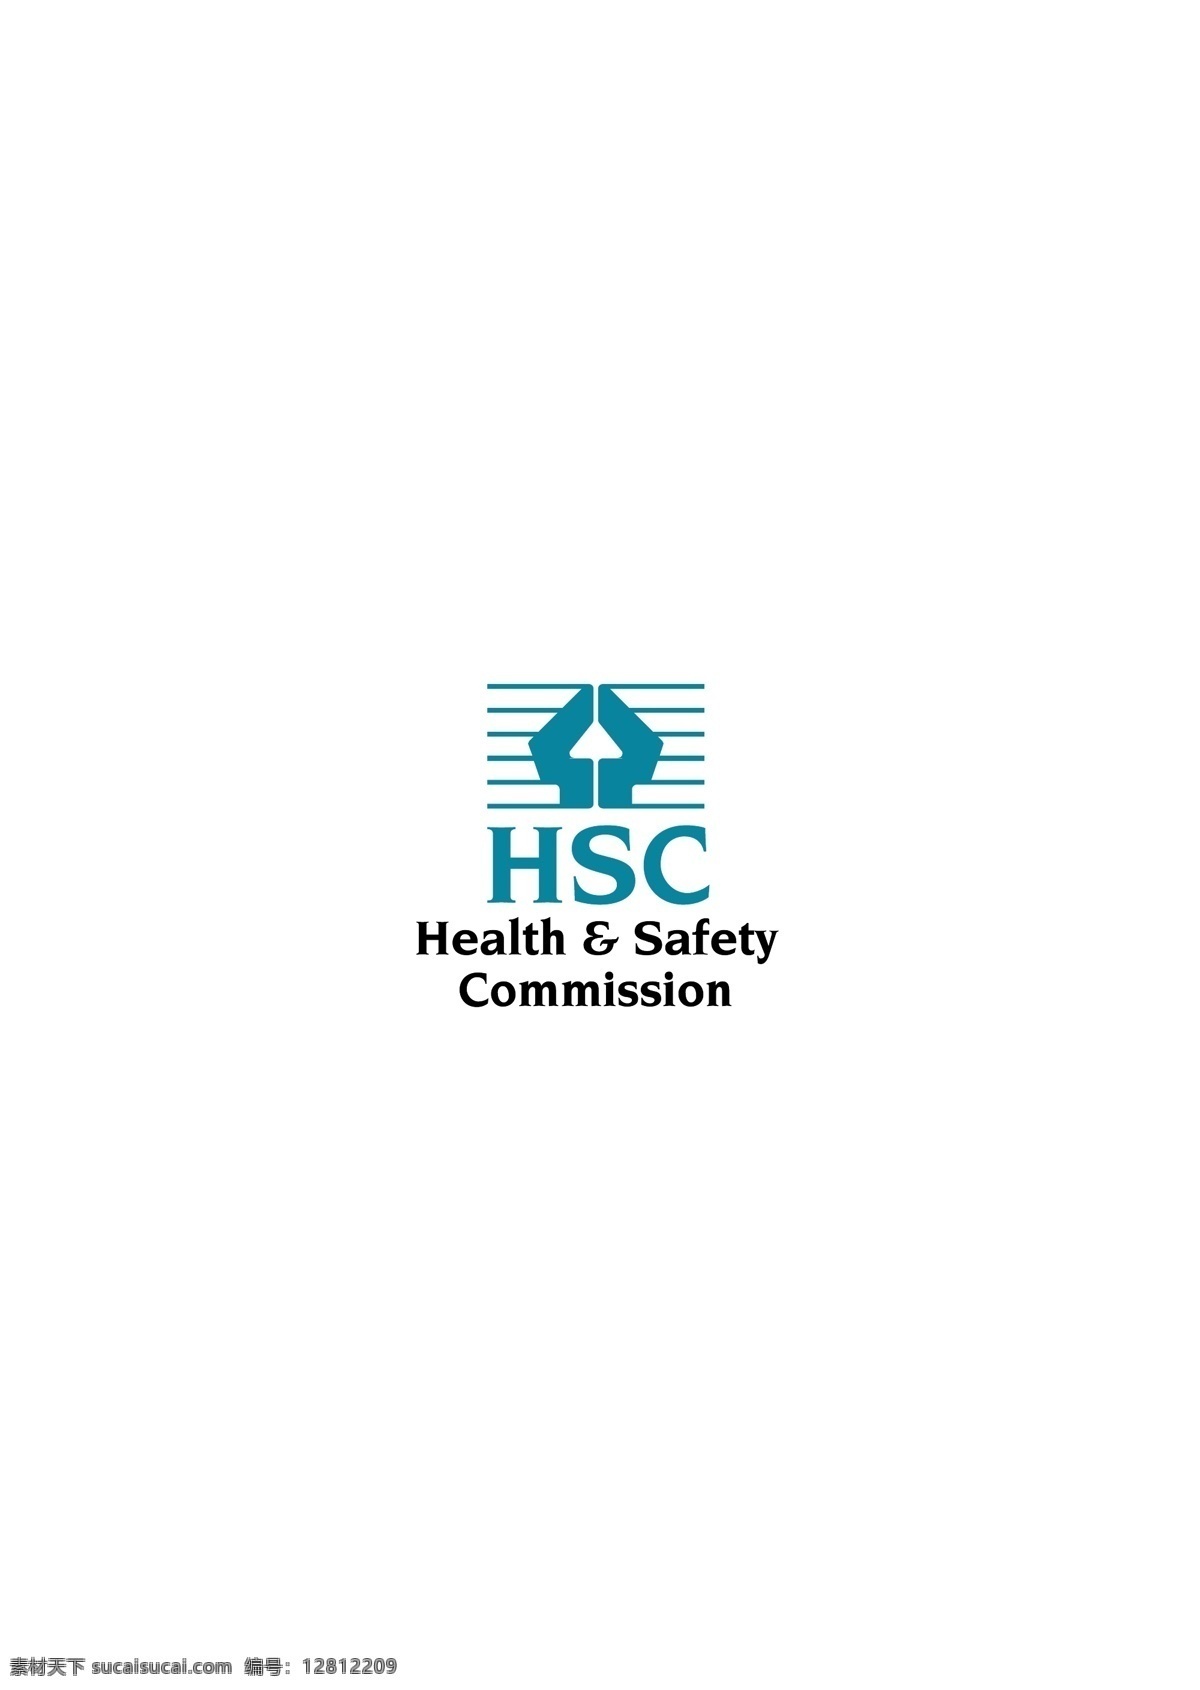 hse logo大全 logo 设计欣赏 商业矢量 矢量下载 医疗机构 标志设计 欣赏 网页矢量 矢量图 其他矢量图